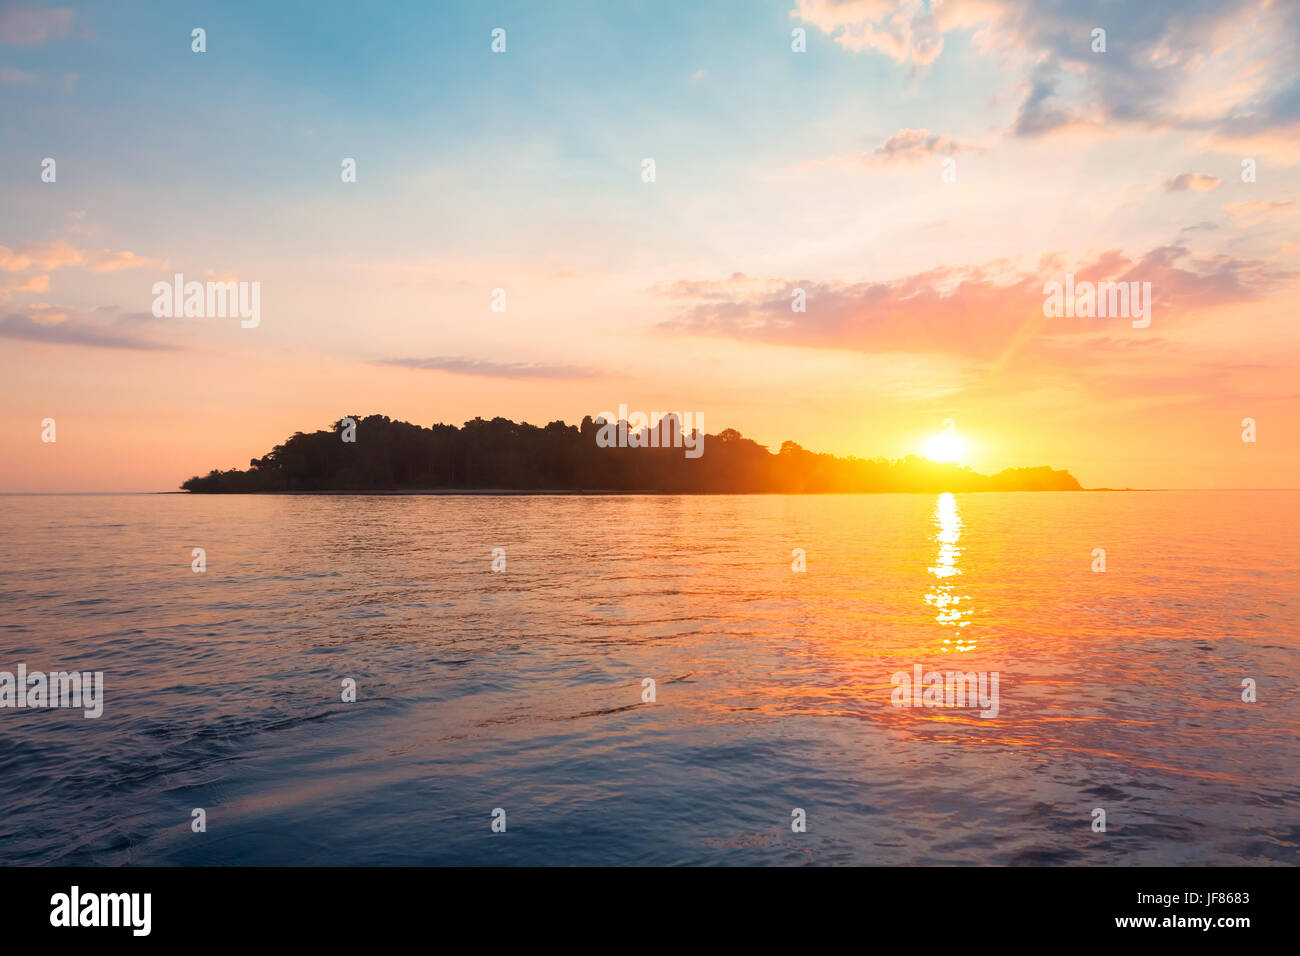 Silhouette d'une île tropicale entourée par l'eau de mer sur l'horizon avec un beau coucher de soleil lumière Banque D'Images